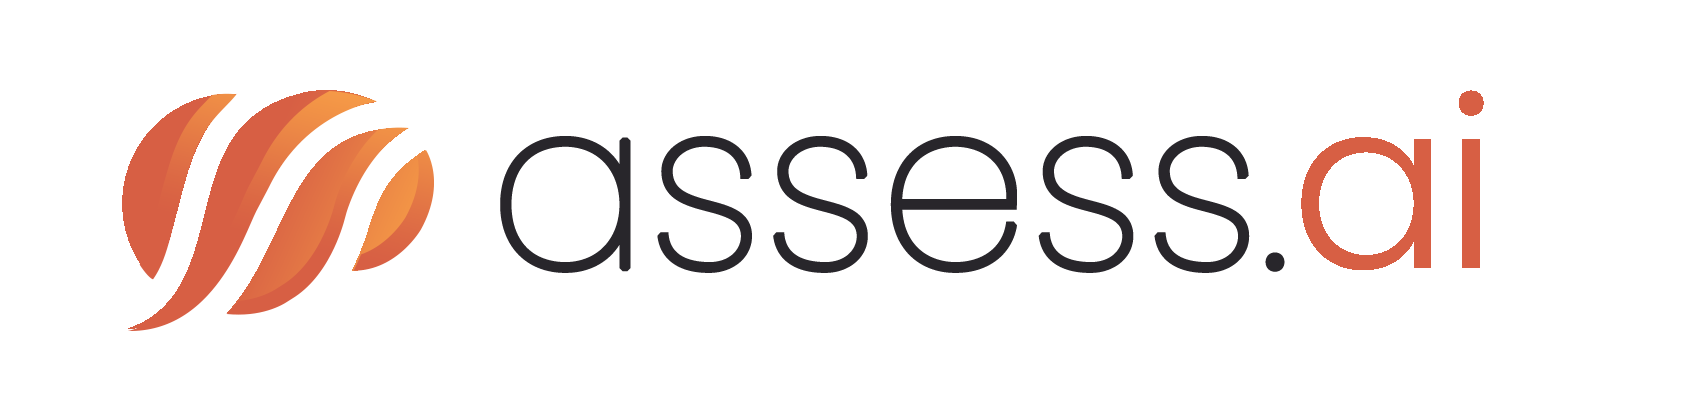 Assess header logo